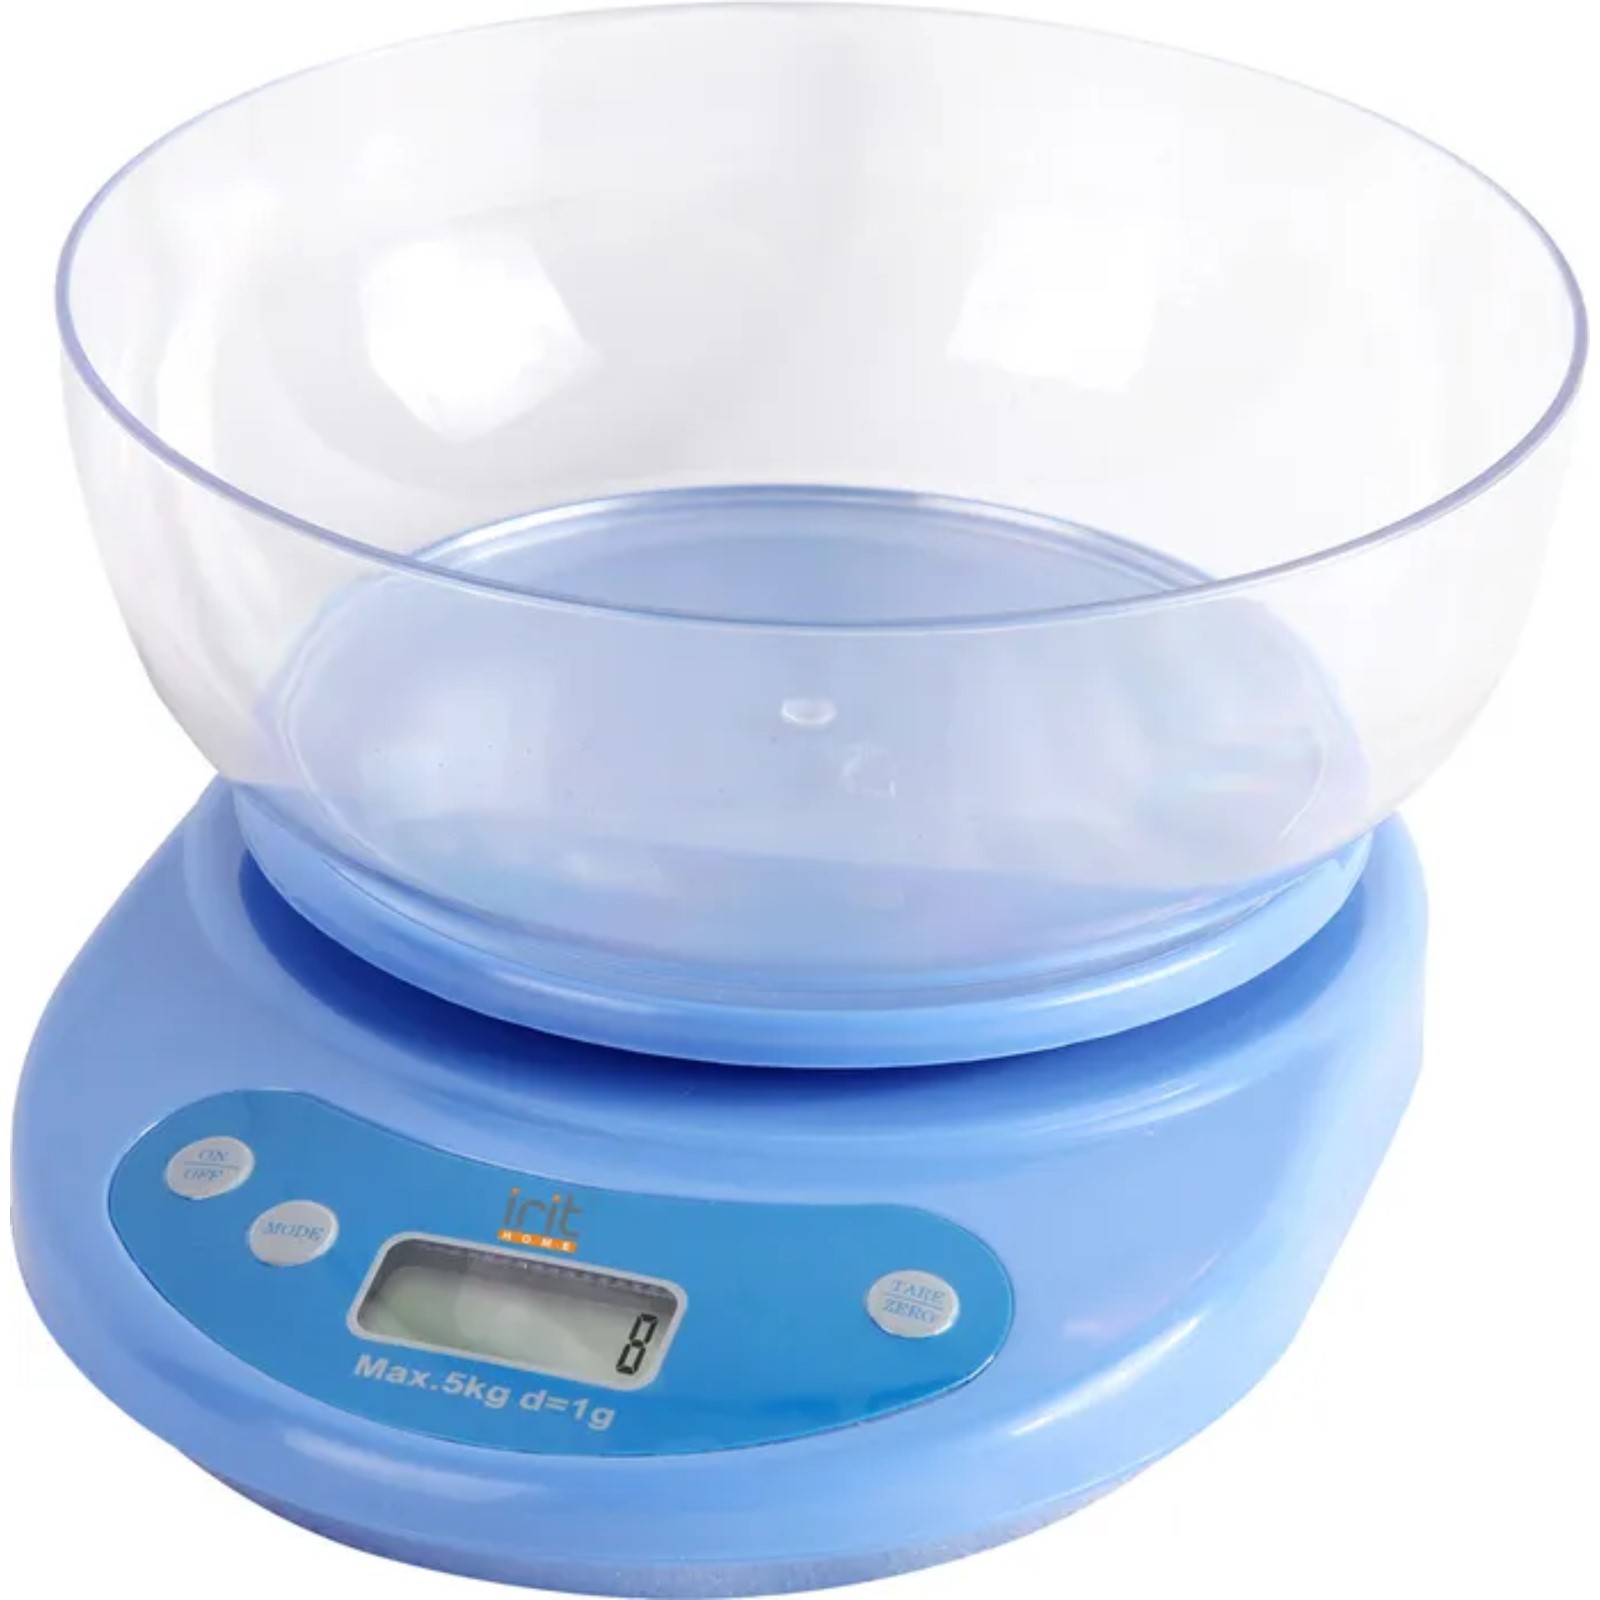 Весы кухонные Luazon Home IR-7119 электронные до 5 кг синие - фото 1